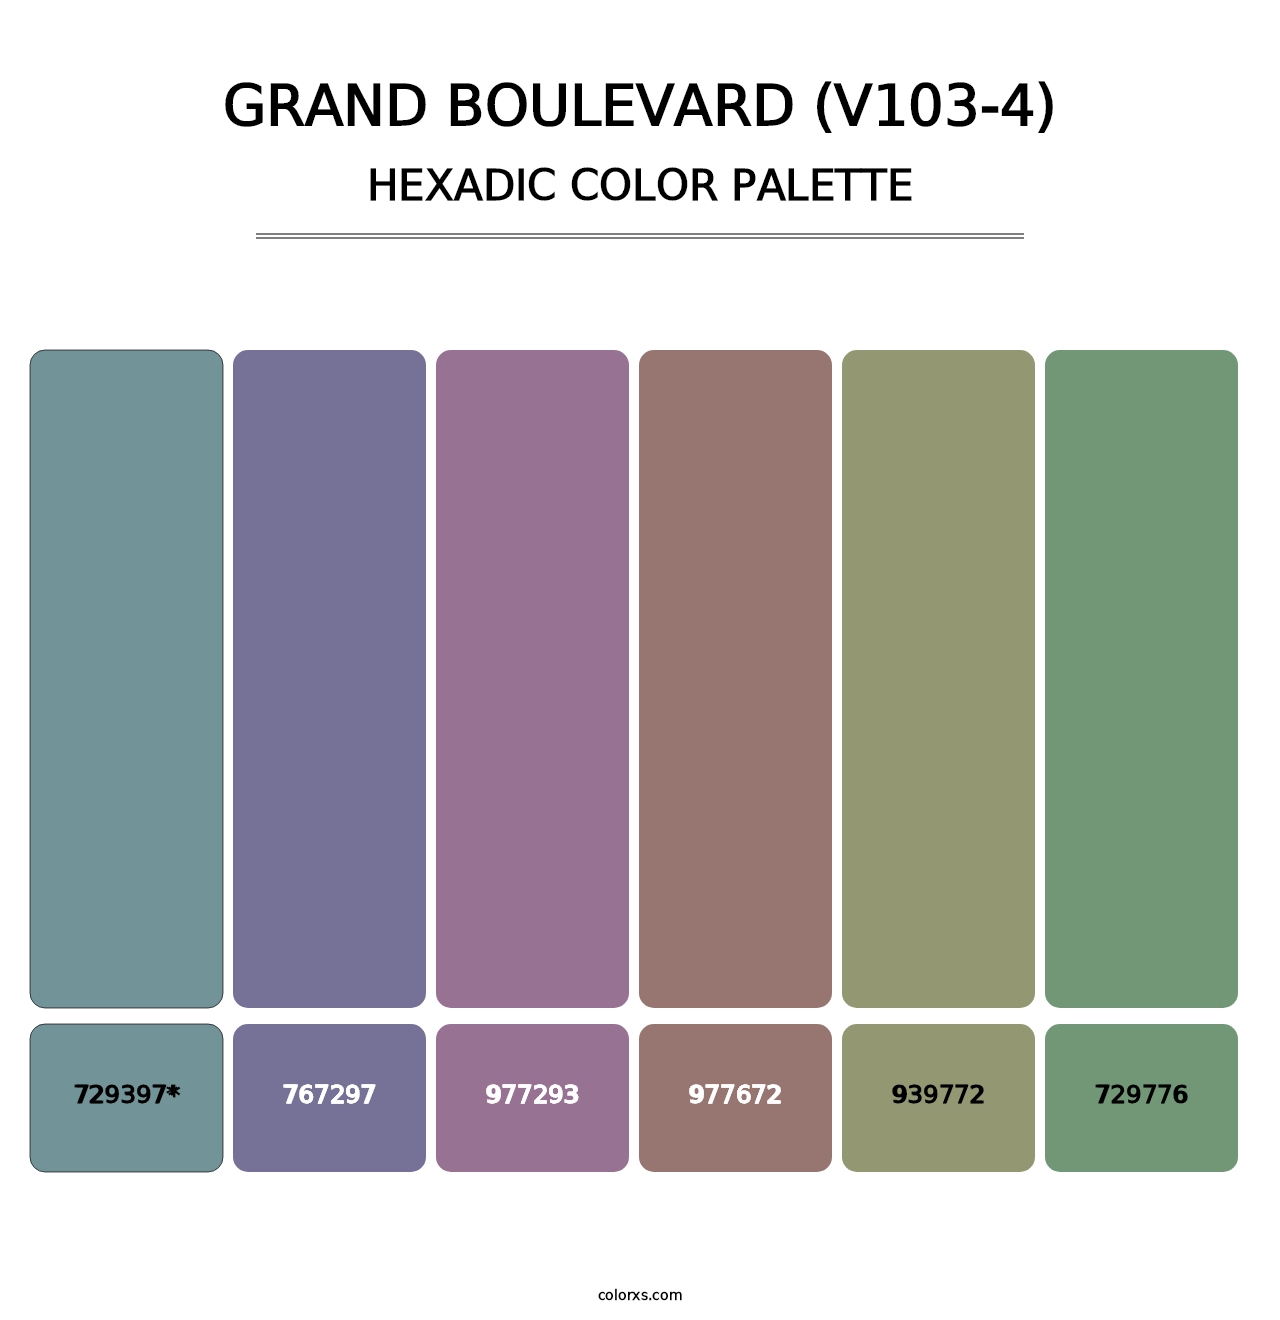 Grand Boulevard (V103-4) - Hexadic Color Palette